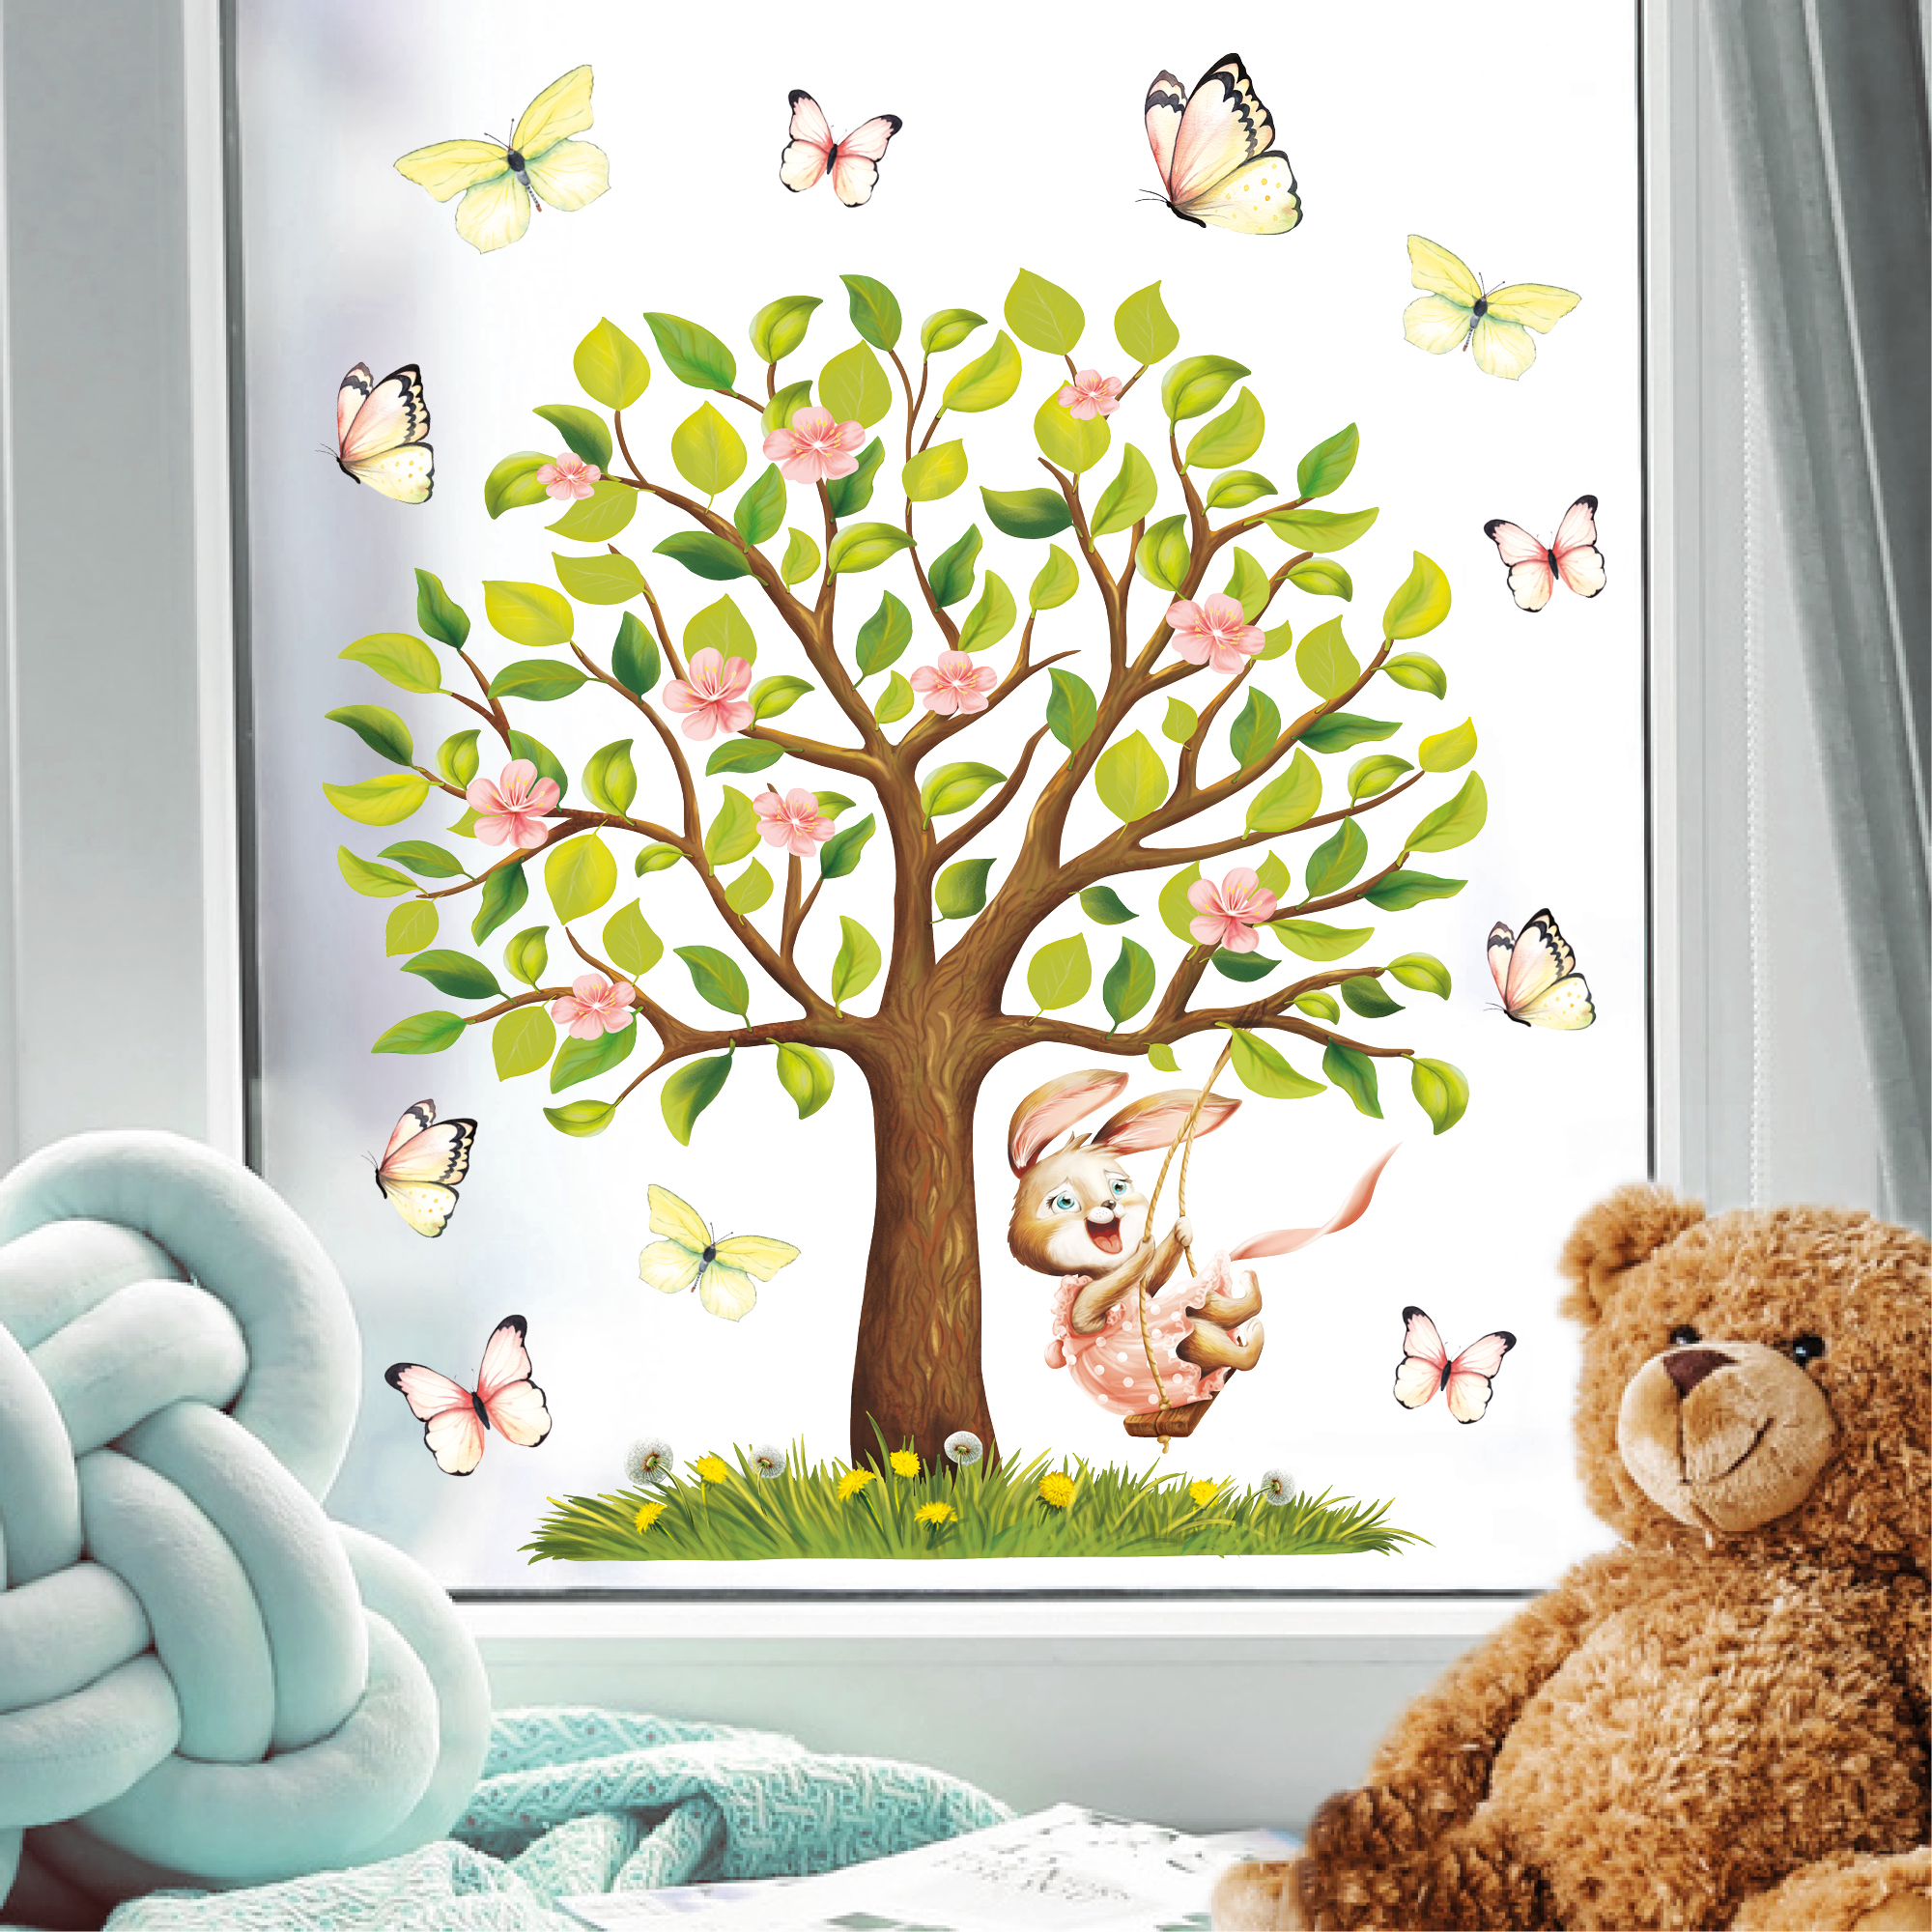 Fensterbild Frühling Ostern Baum Hase Schaukel Schmetterlinge Fensterdeko Kinderzimmer Kind